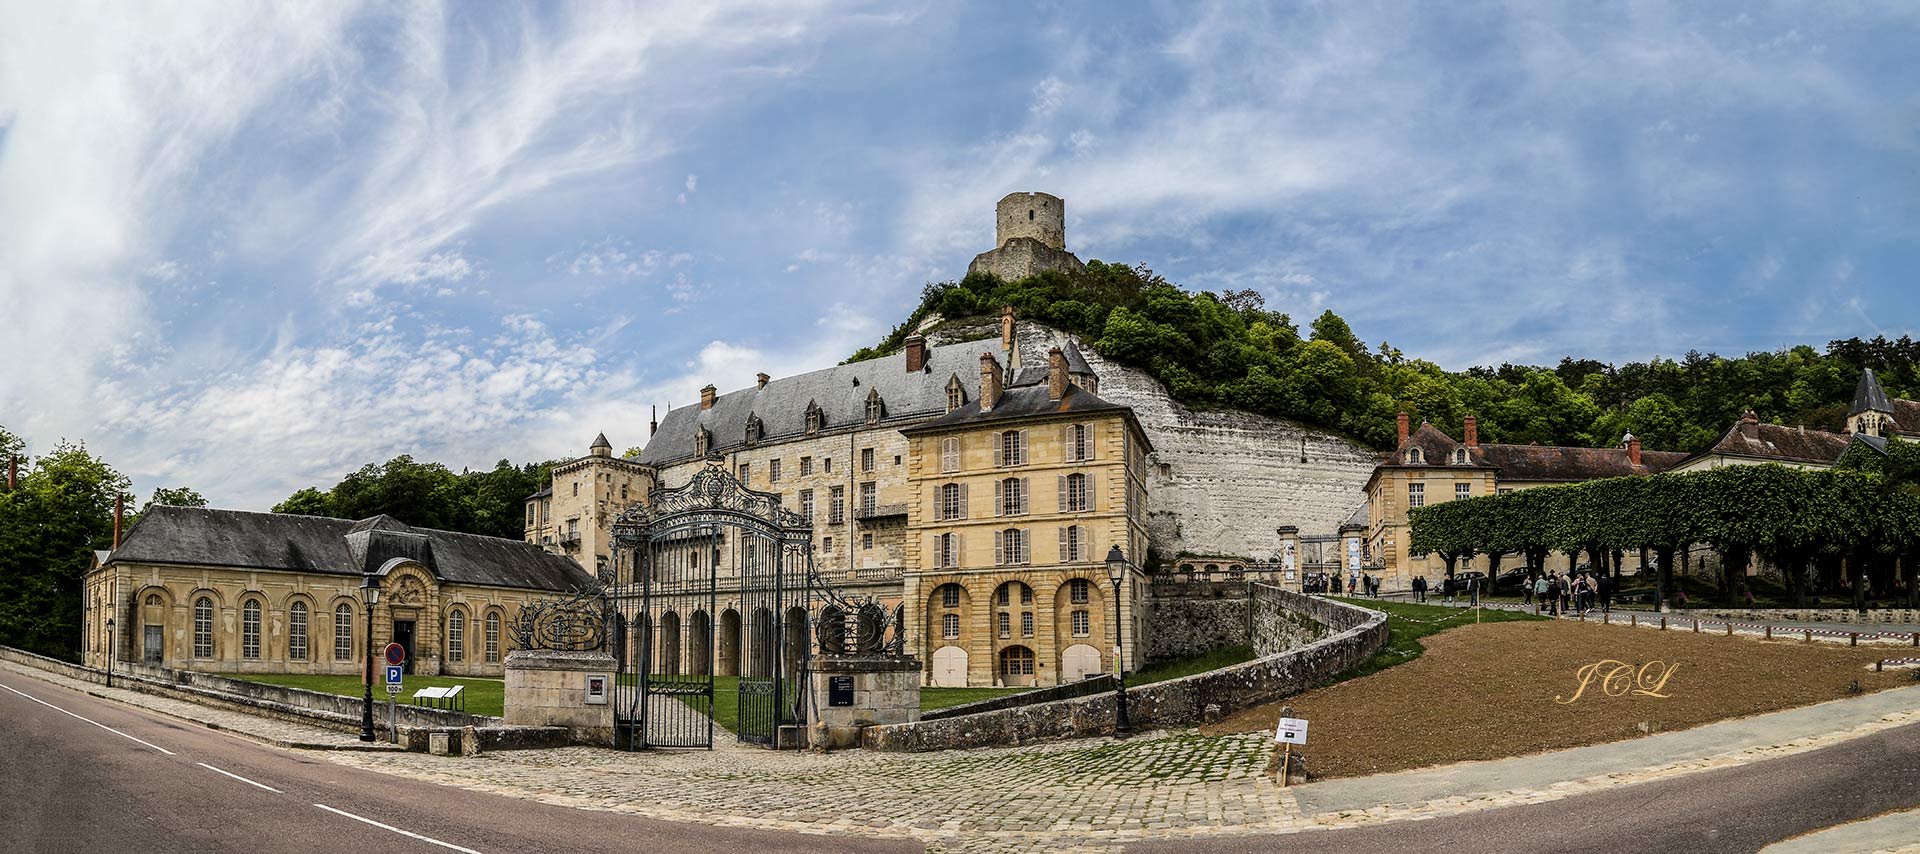 Château de La Roche-Guyon dans le Val d'Oise à l'orée de la Normandie en France.